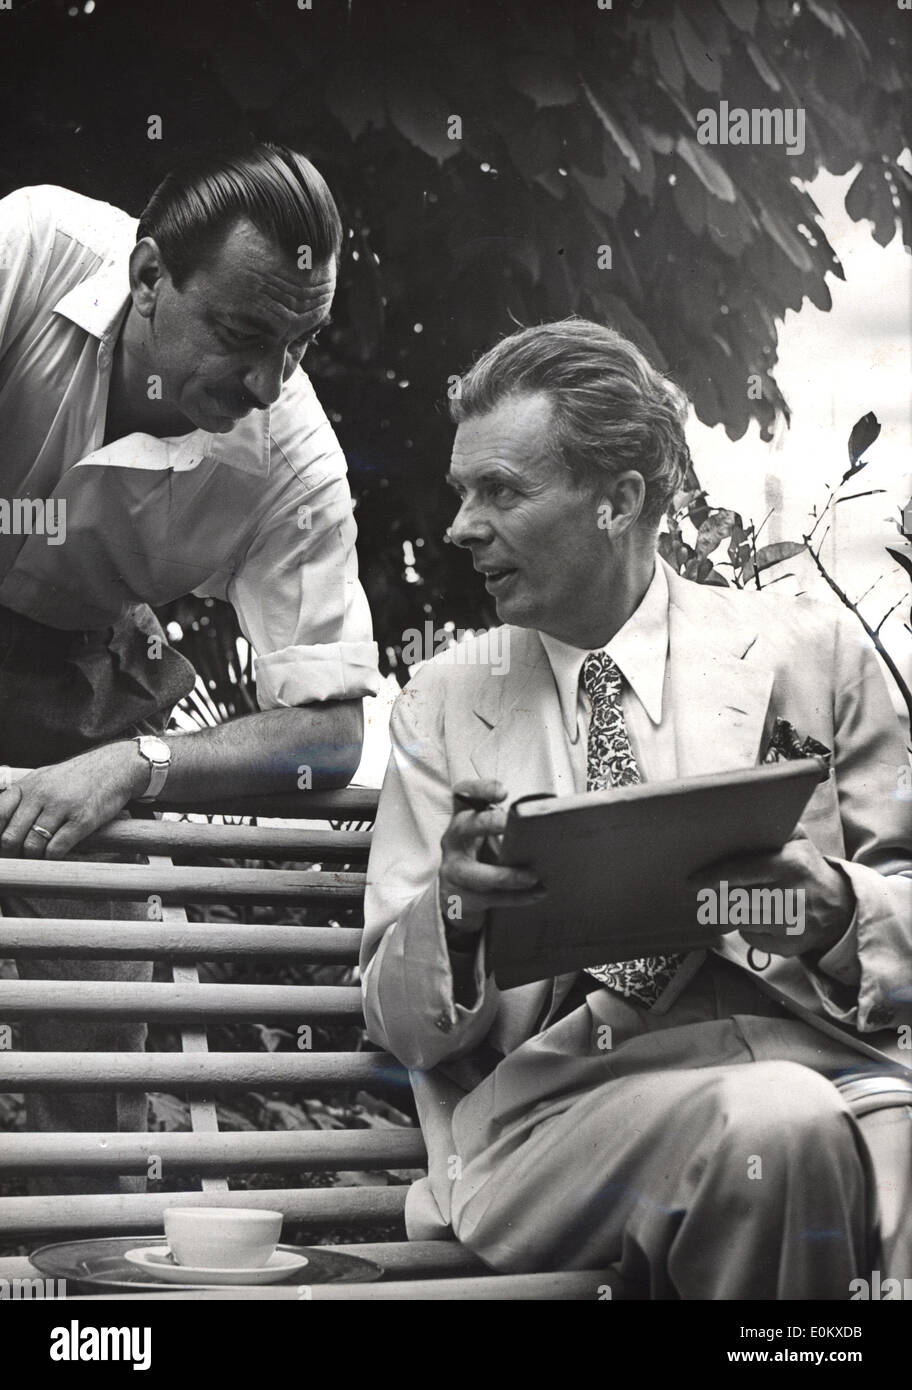 American Author Aldous Huxley meeting with editor Arnoldo Mondadori Stock Photo